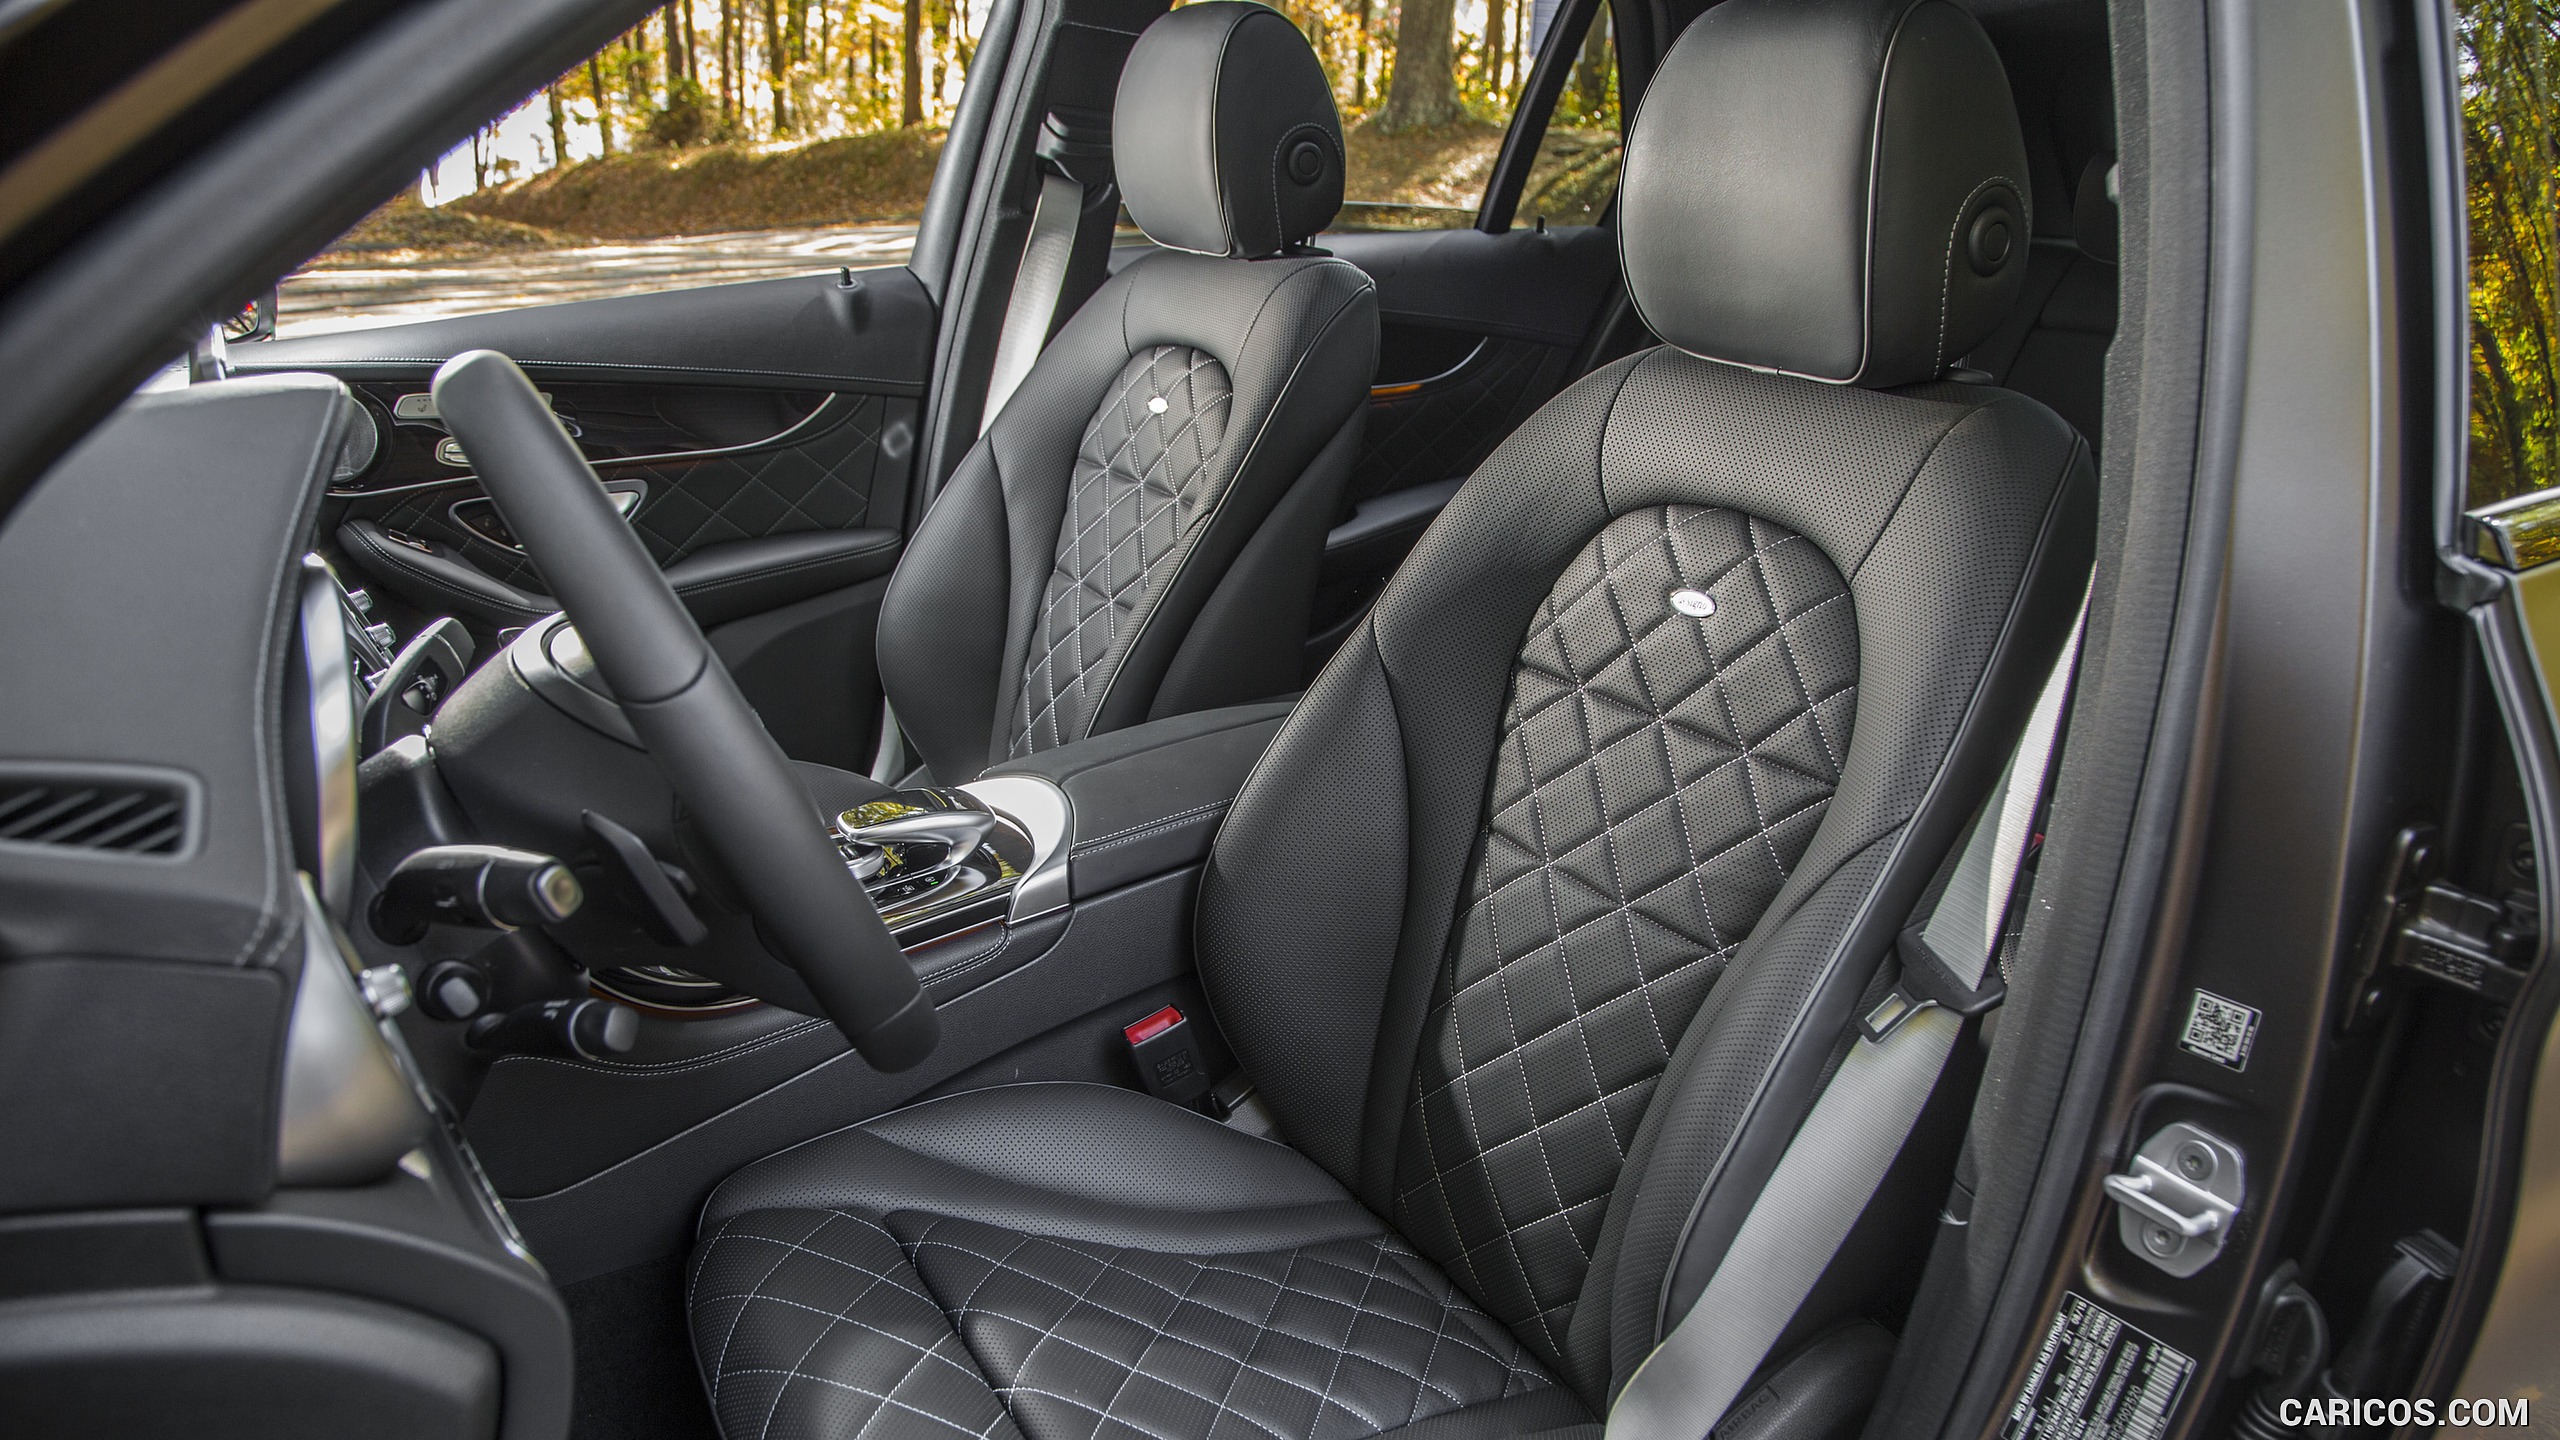 2016 Mercedes-Benz GLC GLC300 4MATIC (US-Spec) - Interior, Front Seats, #63 of 180